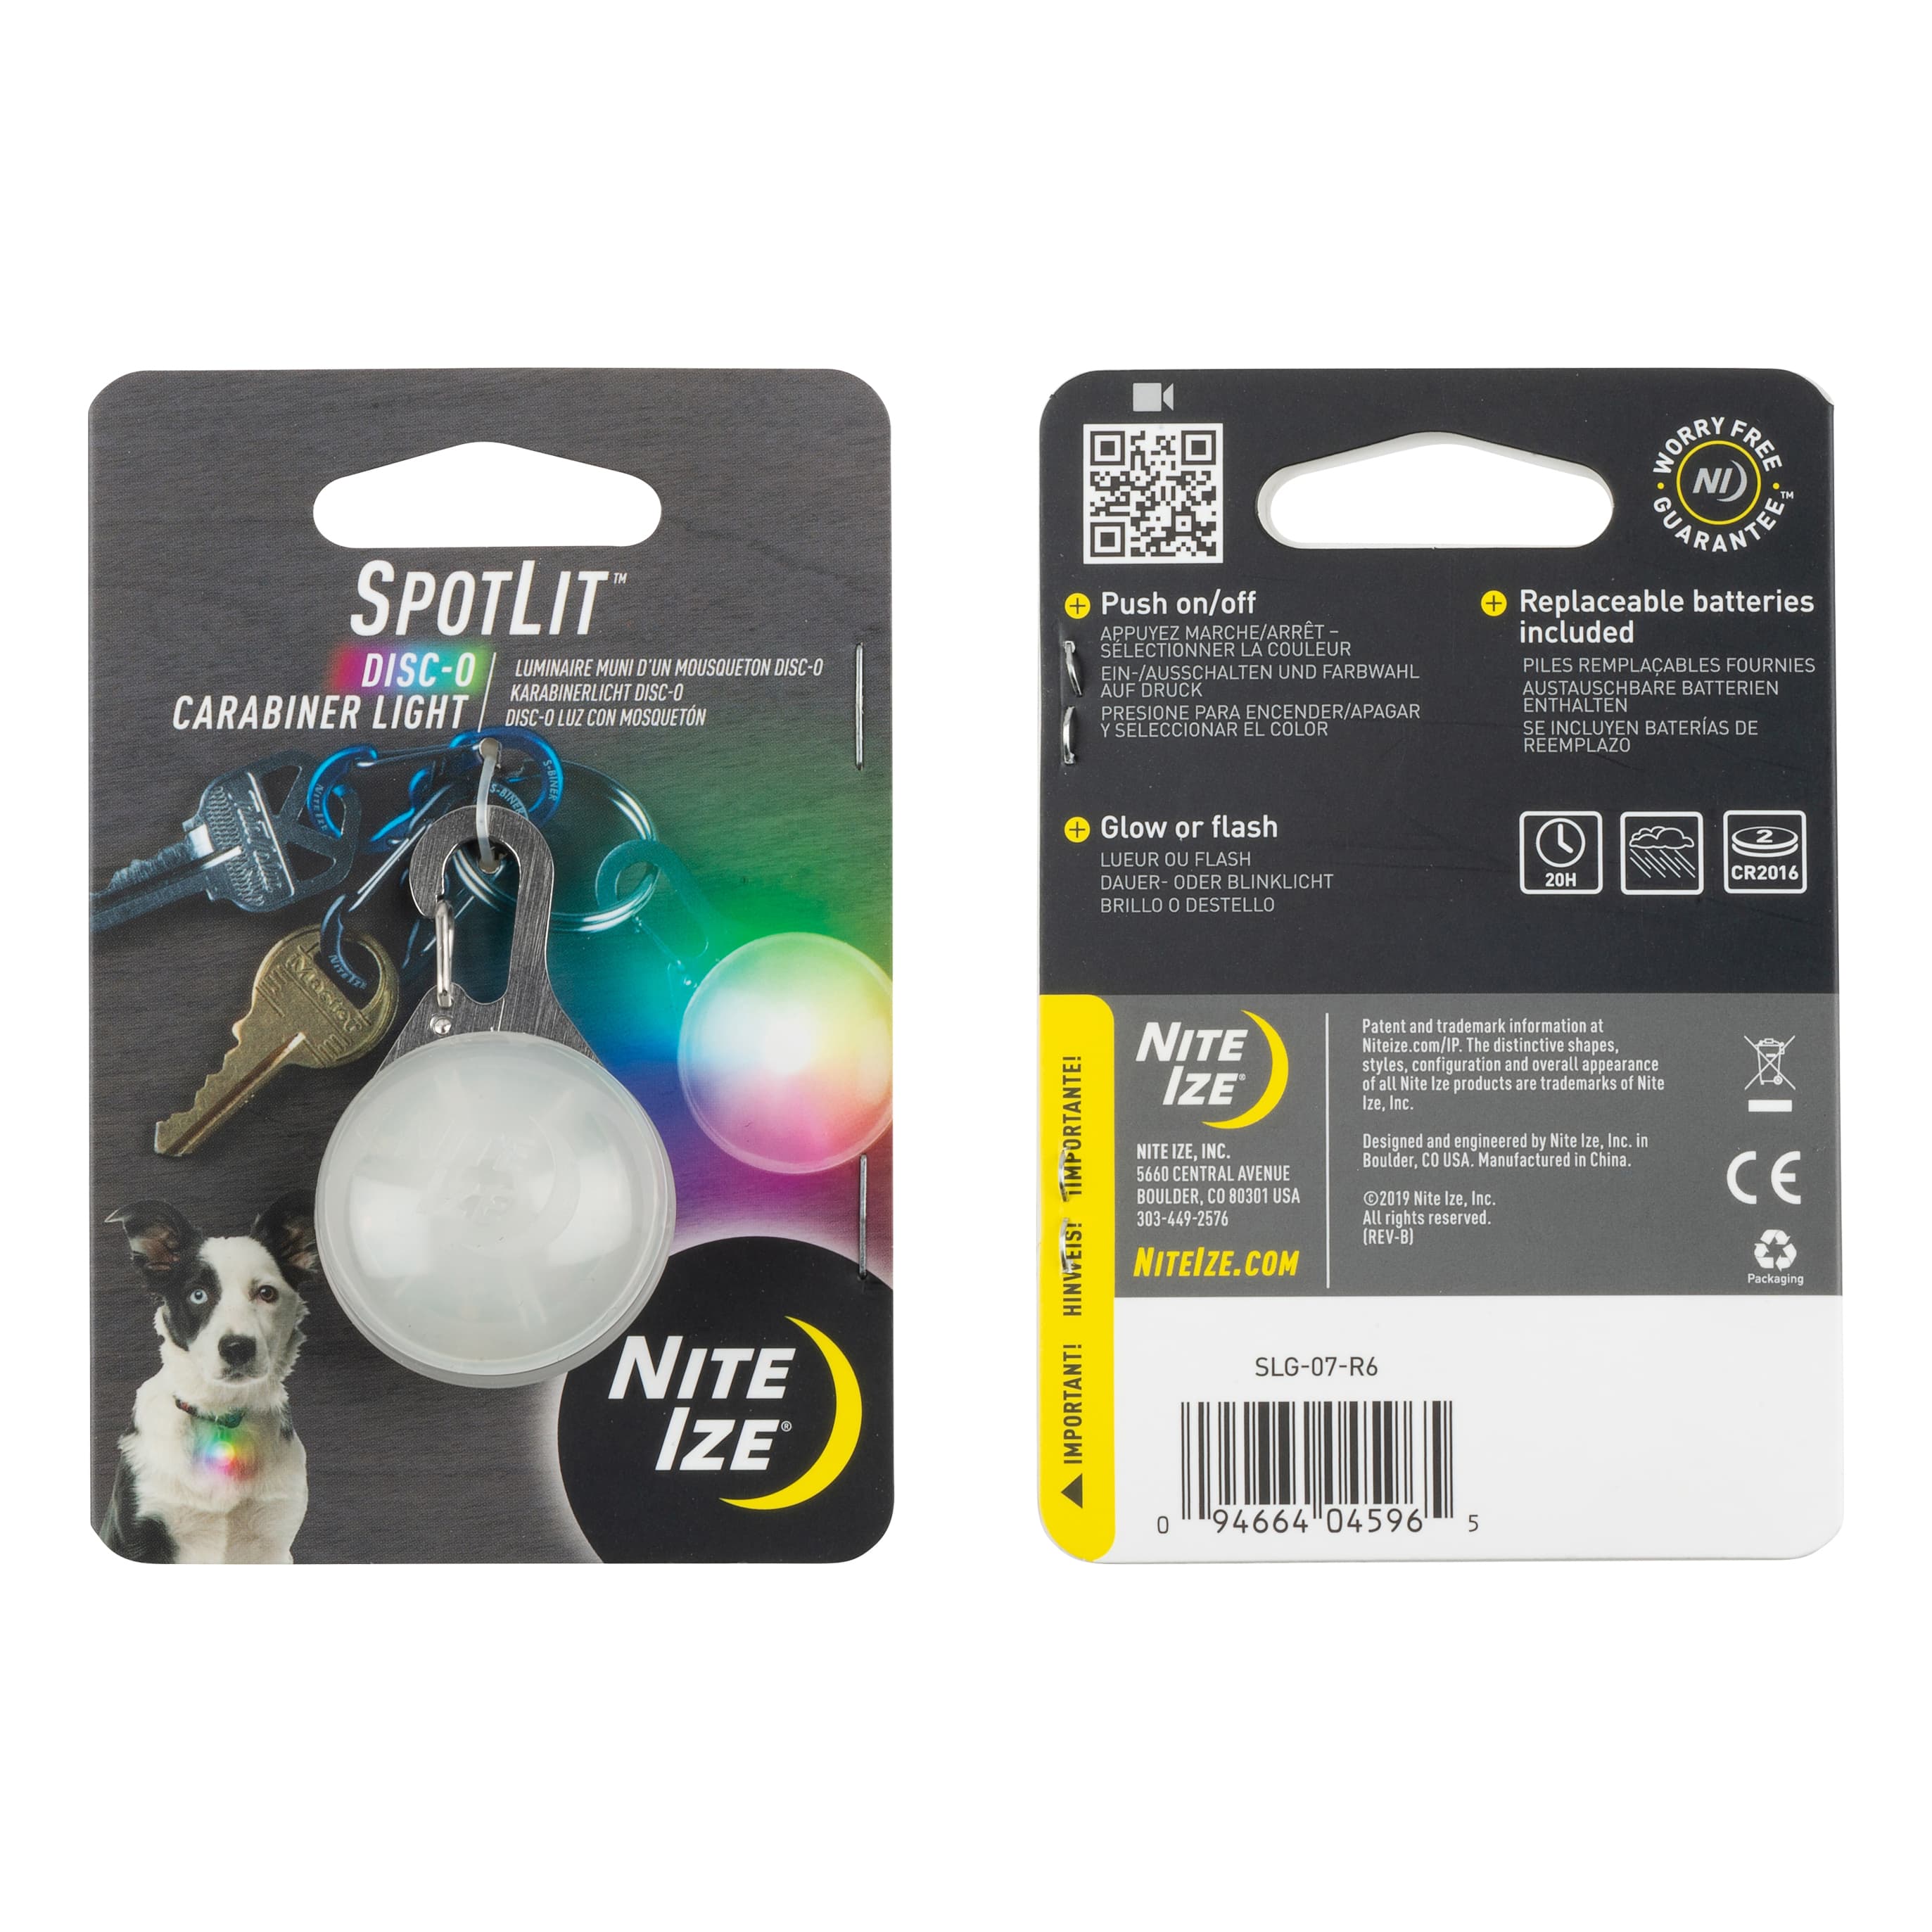 Nite Ize® SpotLit Carabiner Light - Disco